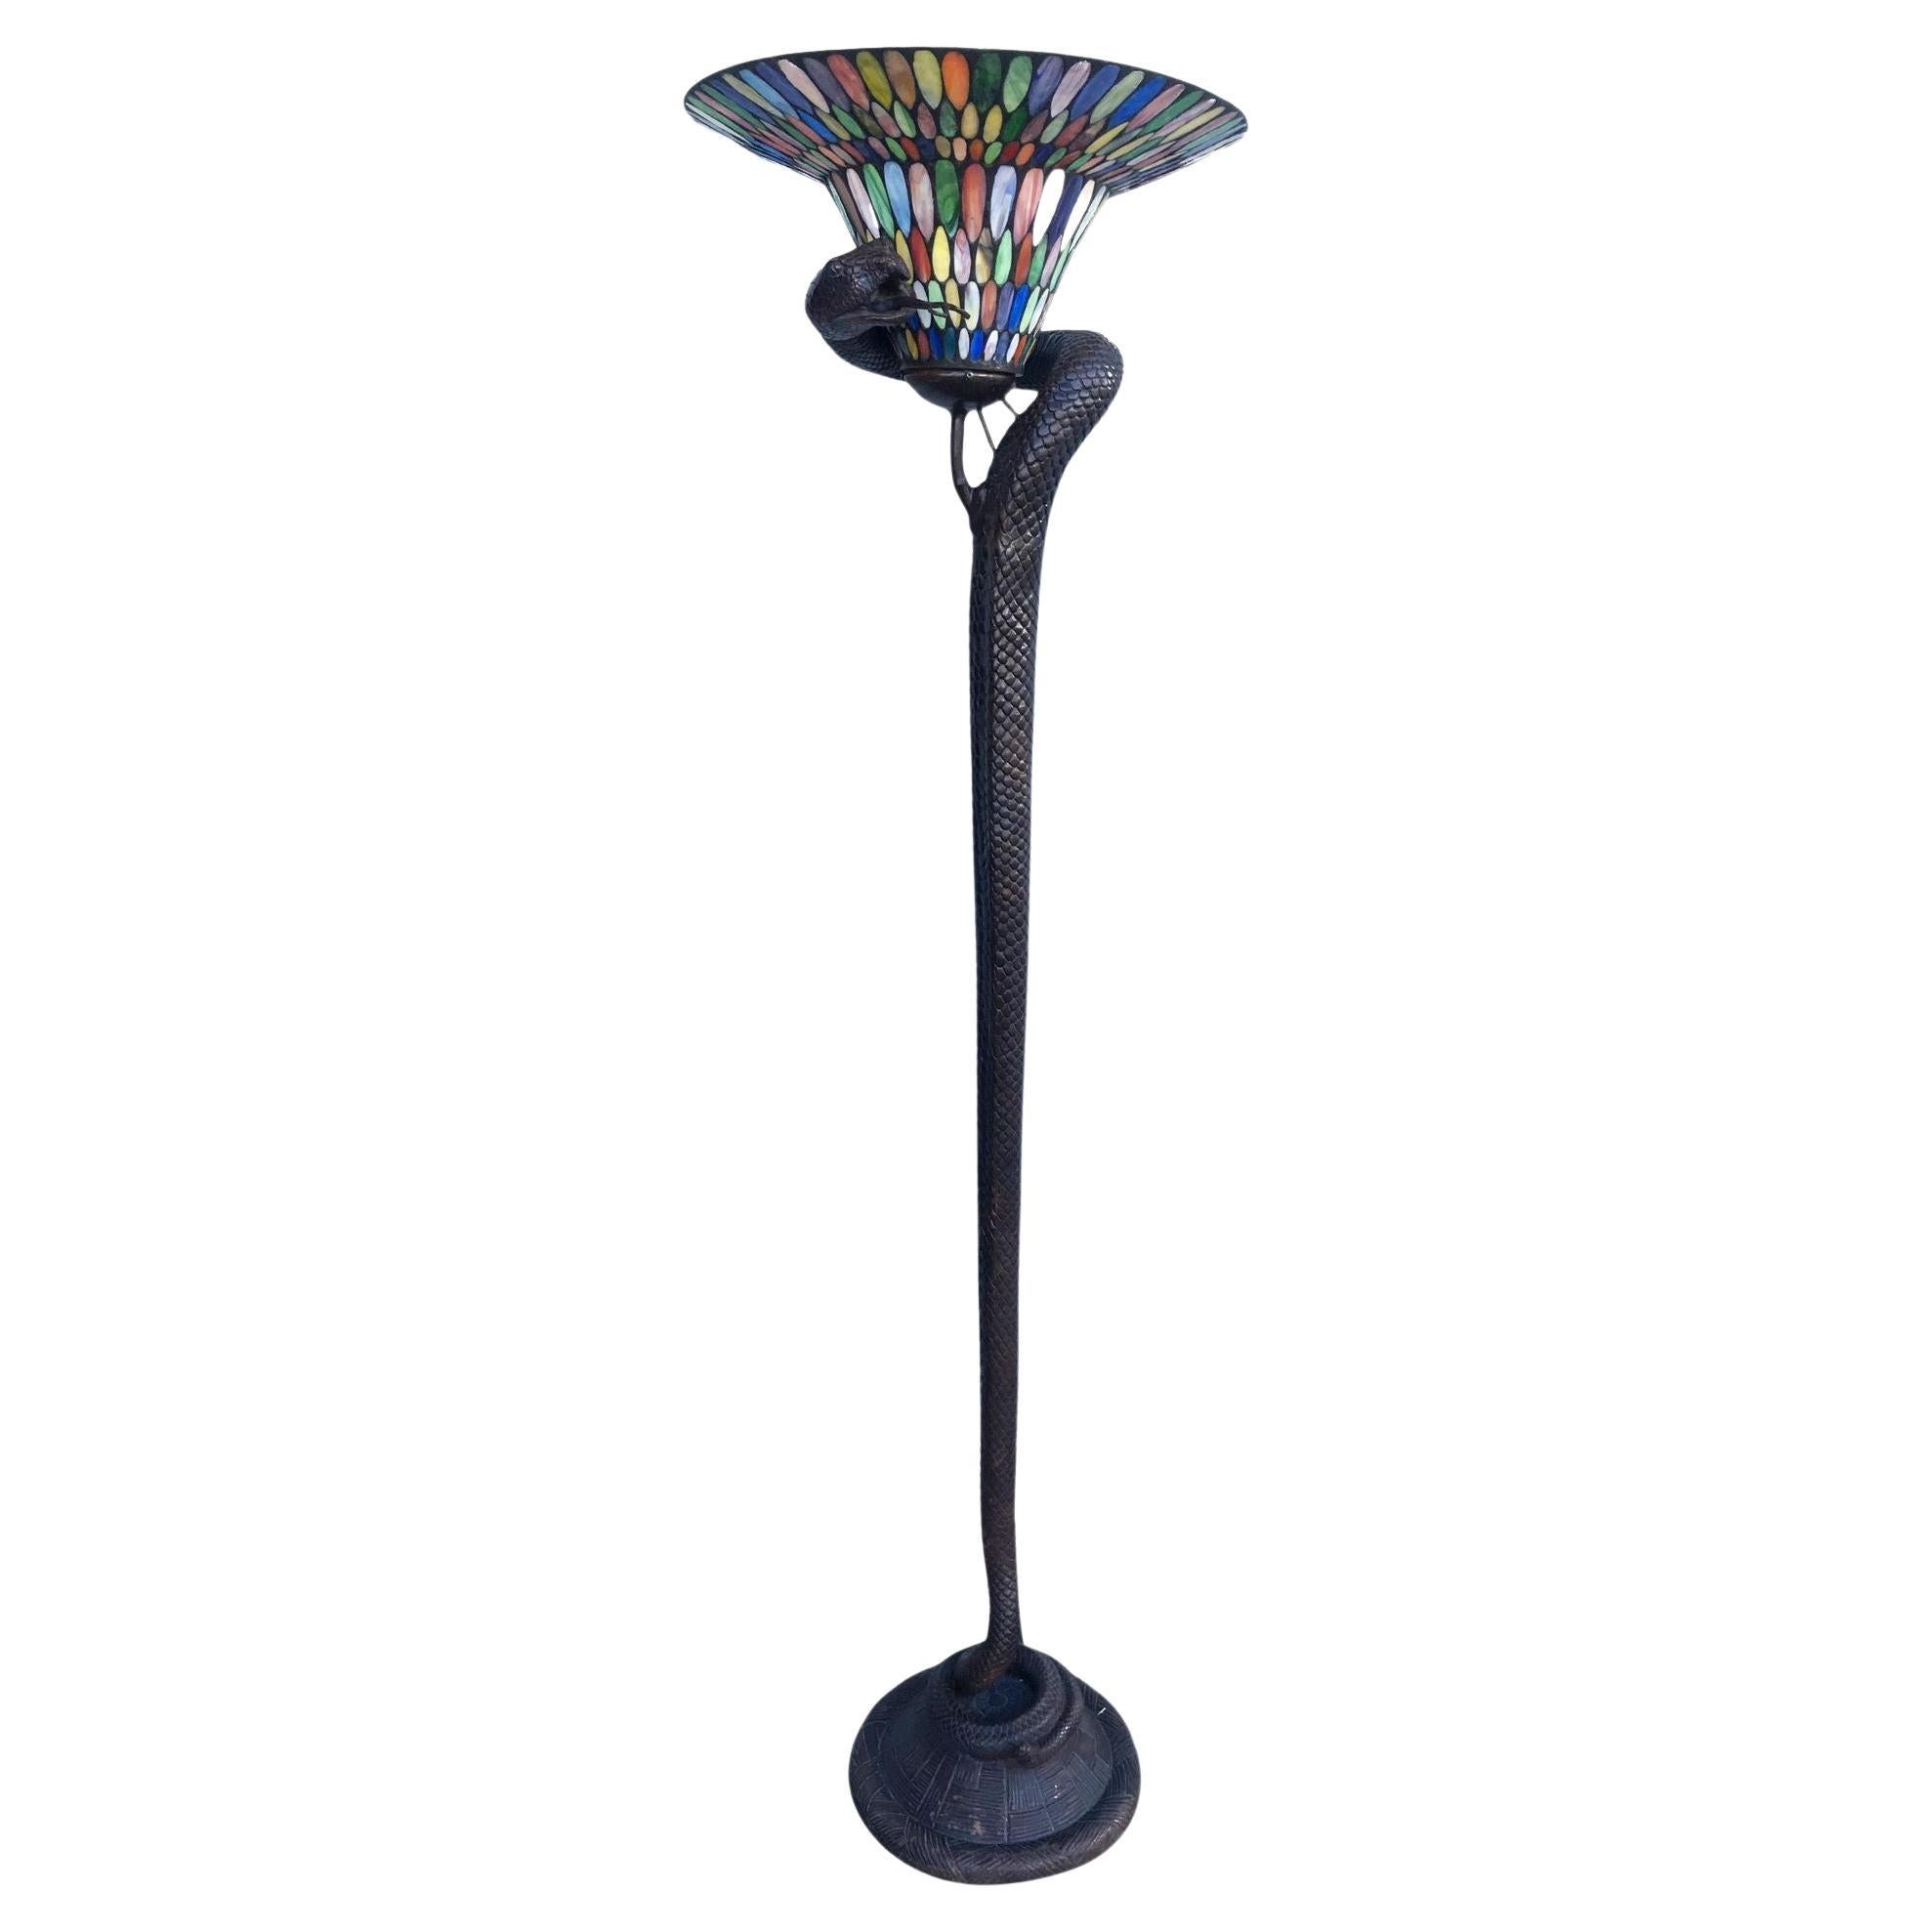 Edgar Brandt Stil Handgegossene Bronze-Schlangen-Stehlampe mit Buntglas-Schirm